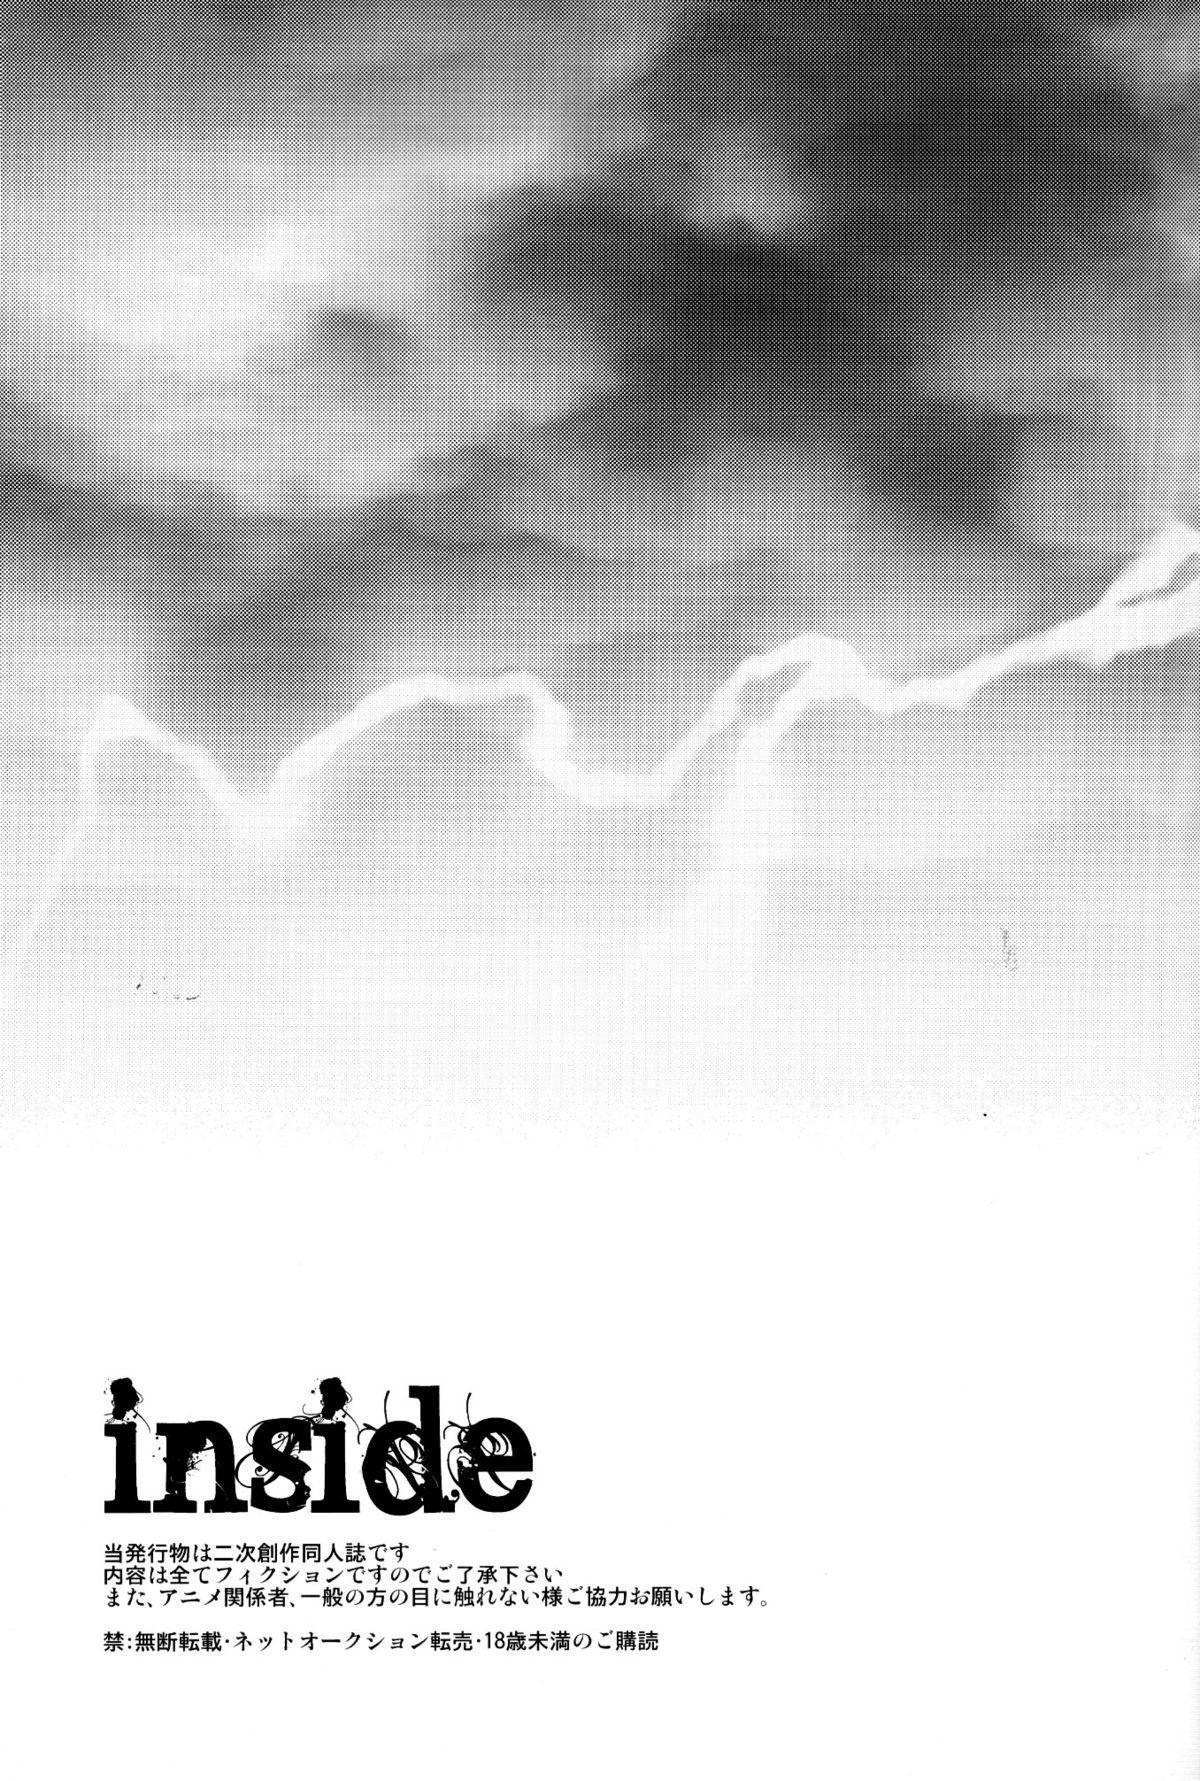 Inside 1